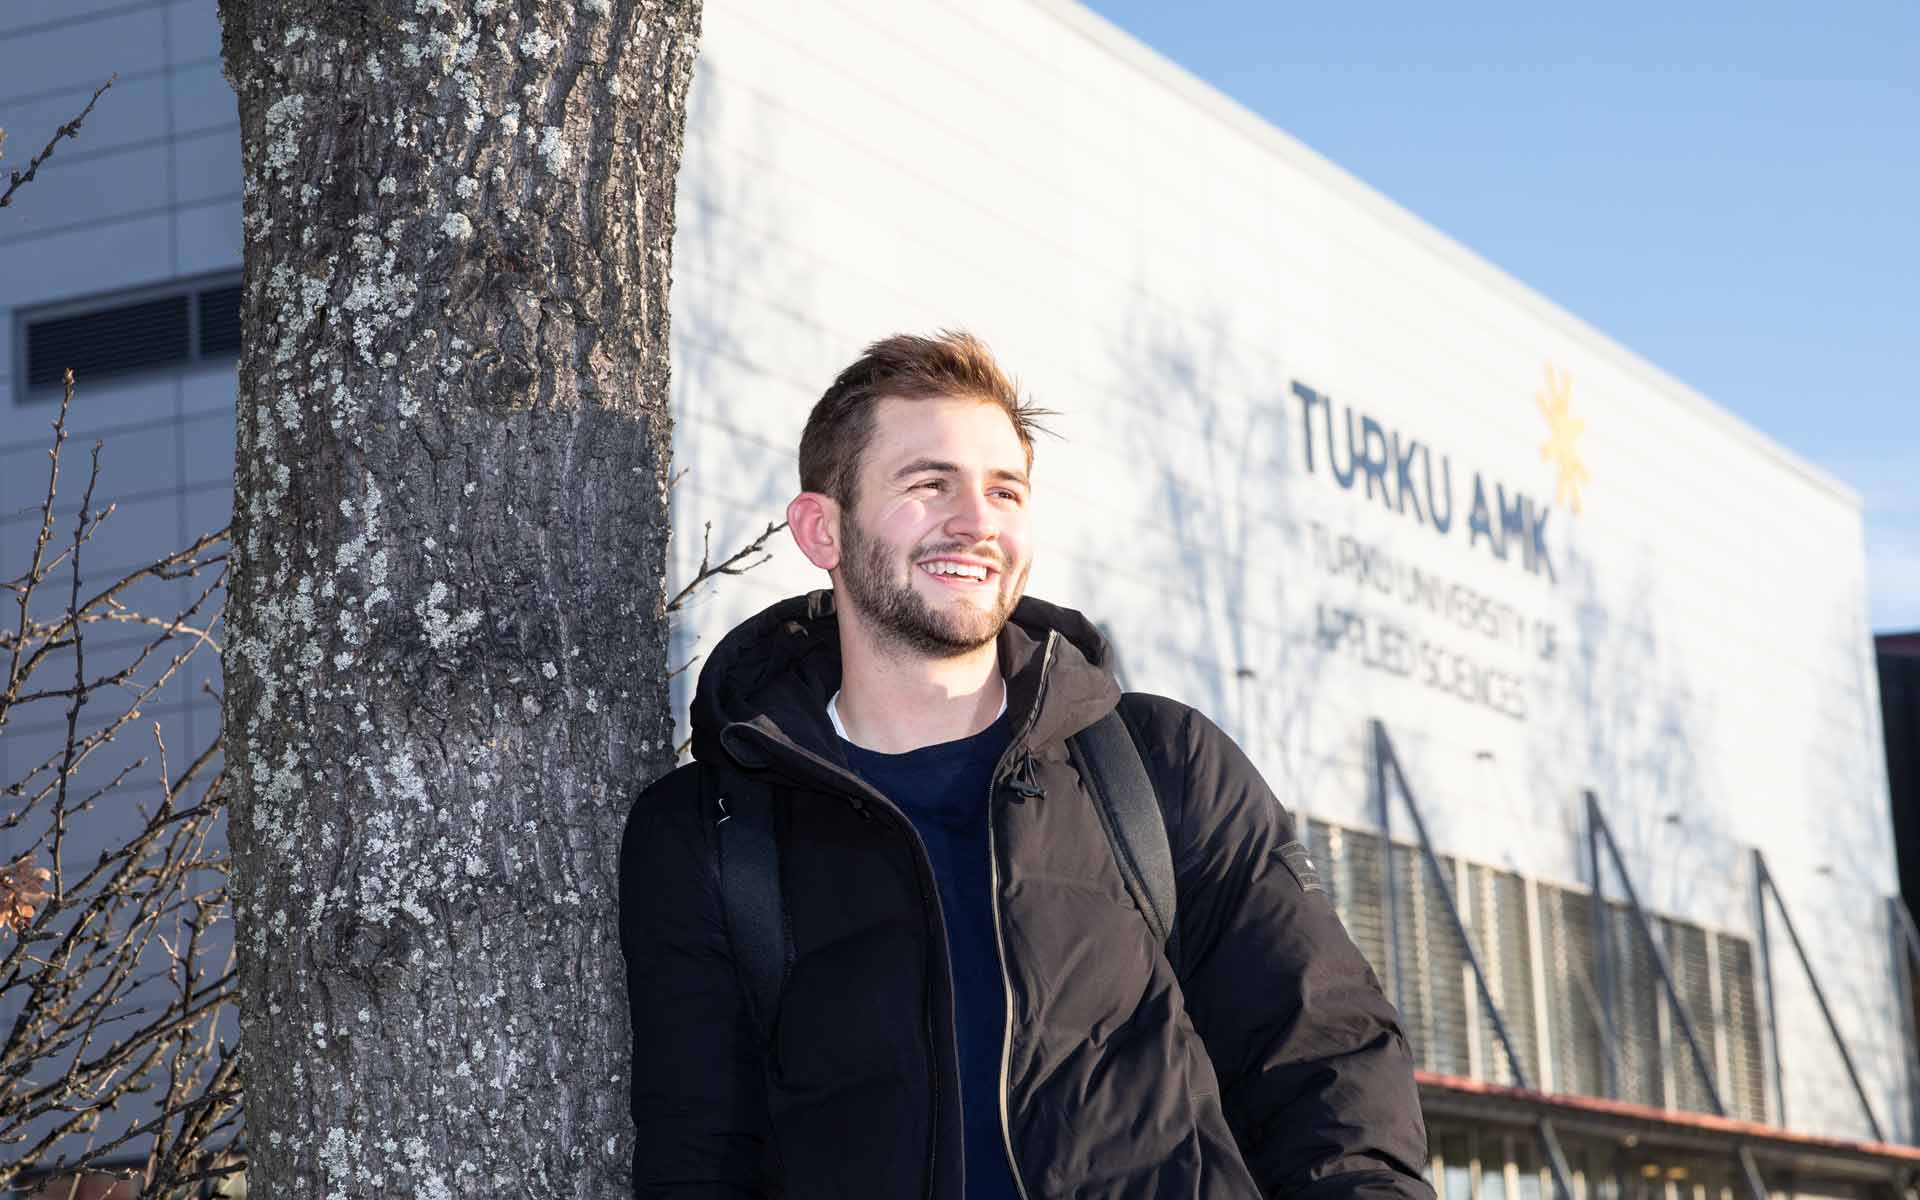 Ein Student der TH AB auf dem Campus in Turku